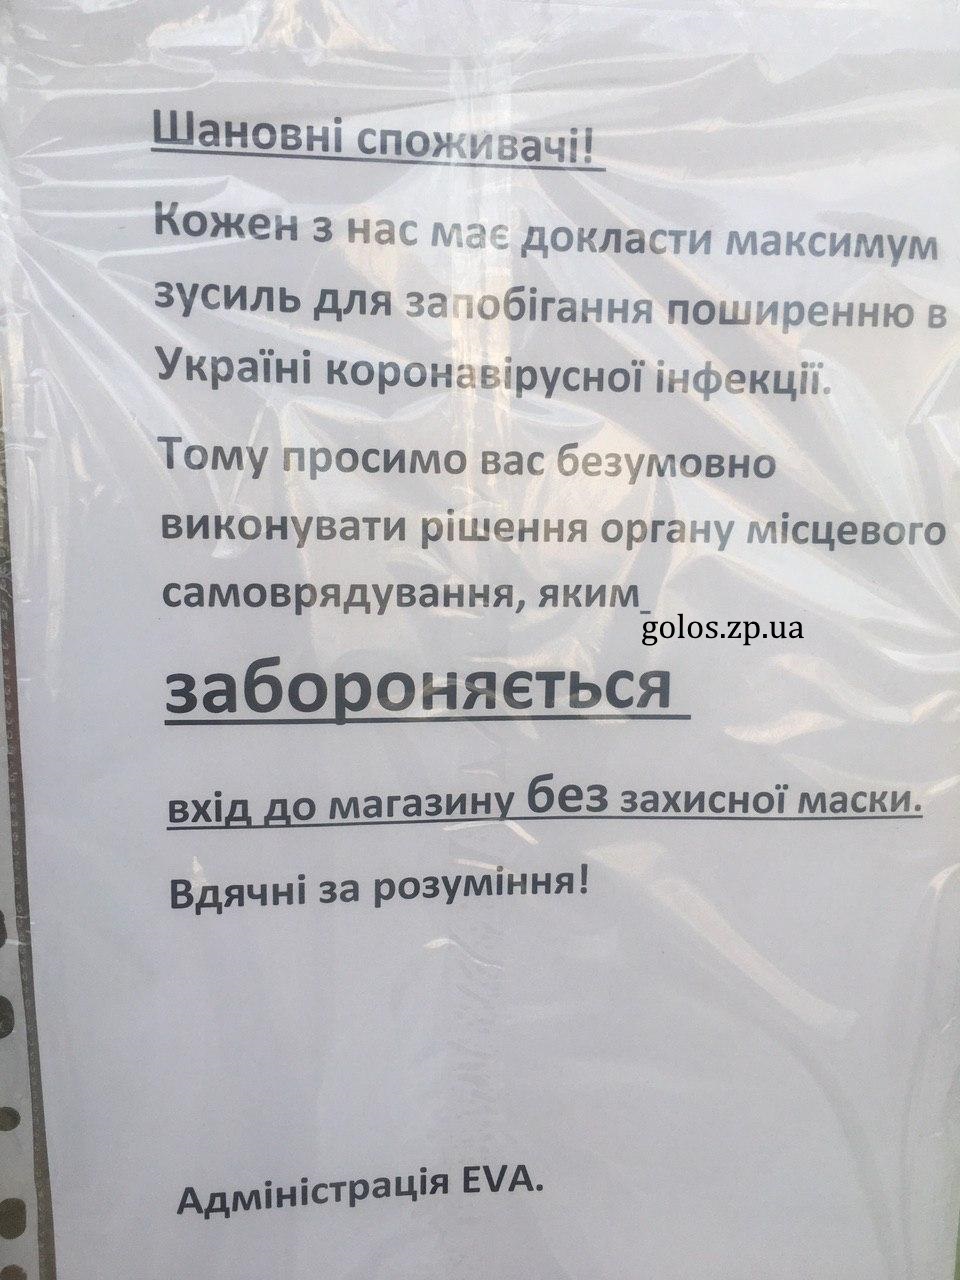 В Запорожских непродуктовых магазинах вводят новые ограничения (ФОТО)